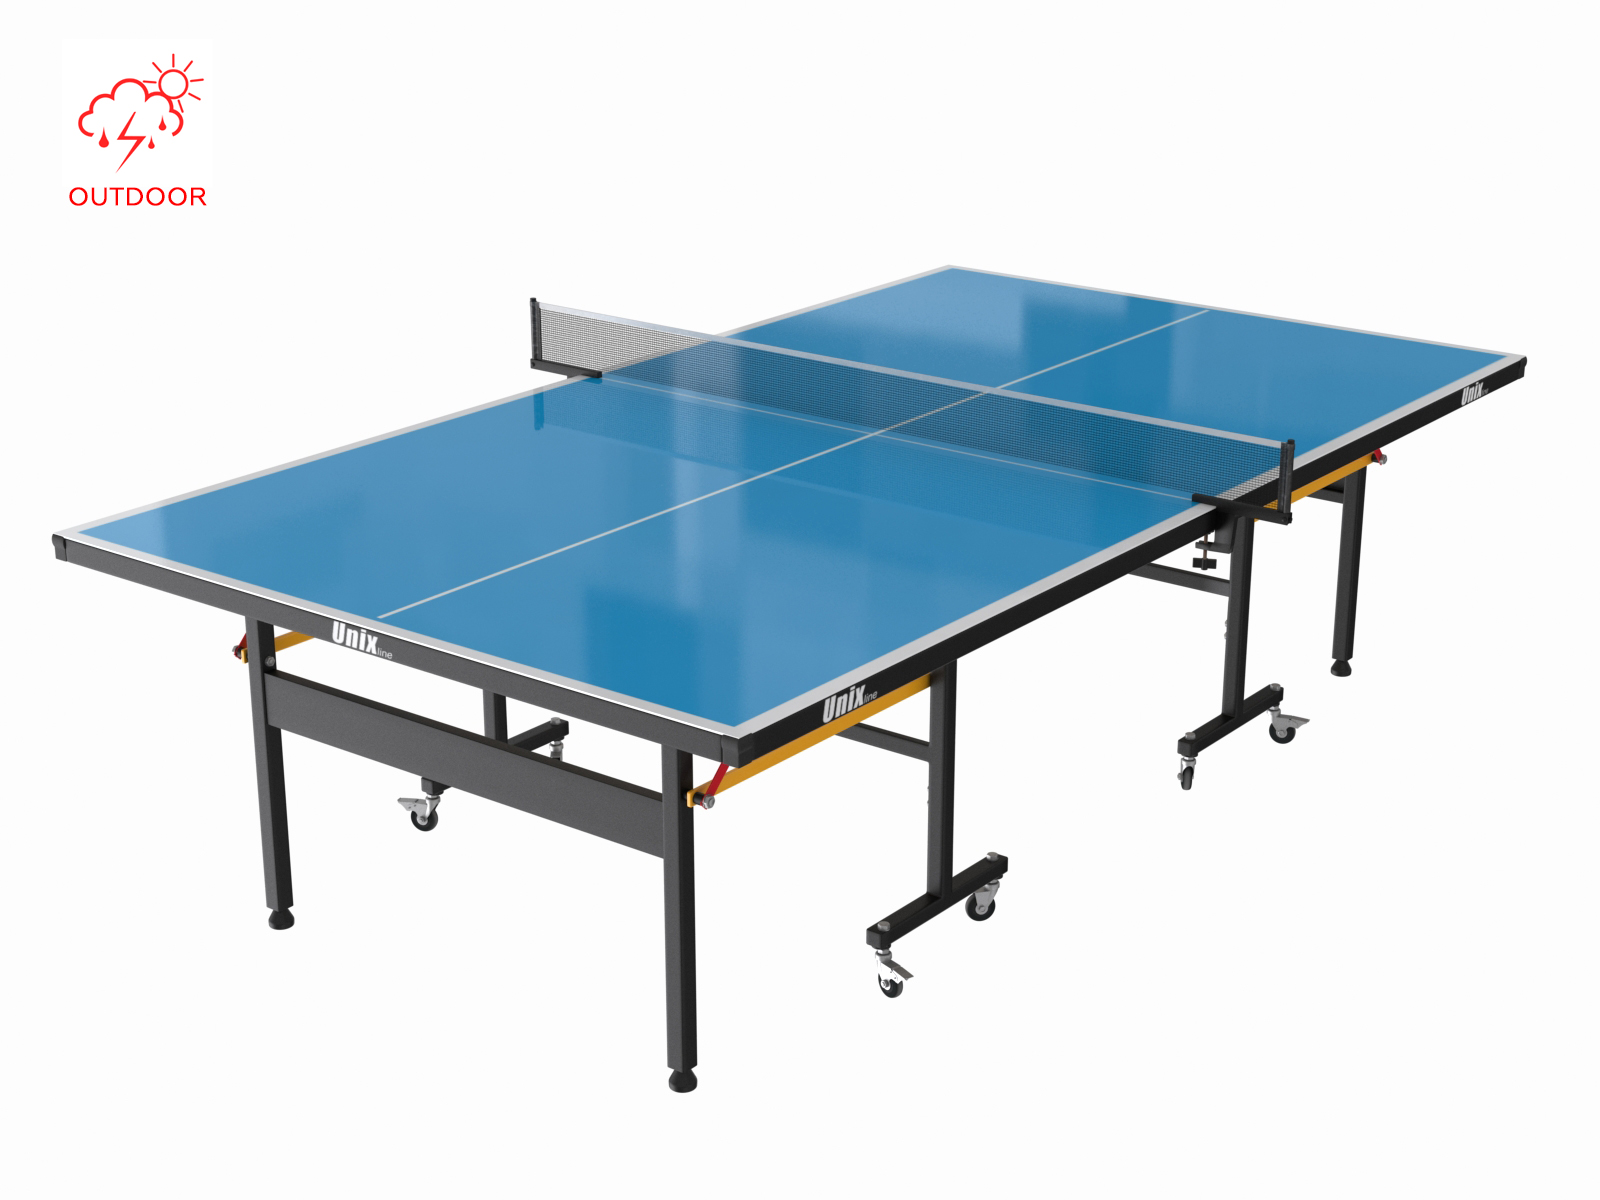 Всепогодный теннисный стол UNIX Line outdoor 6mm (blue) - 2 